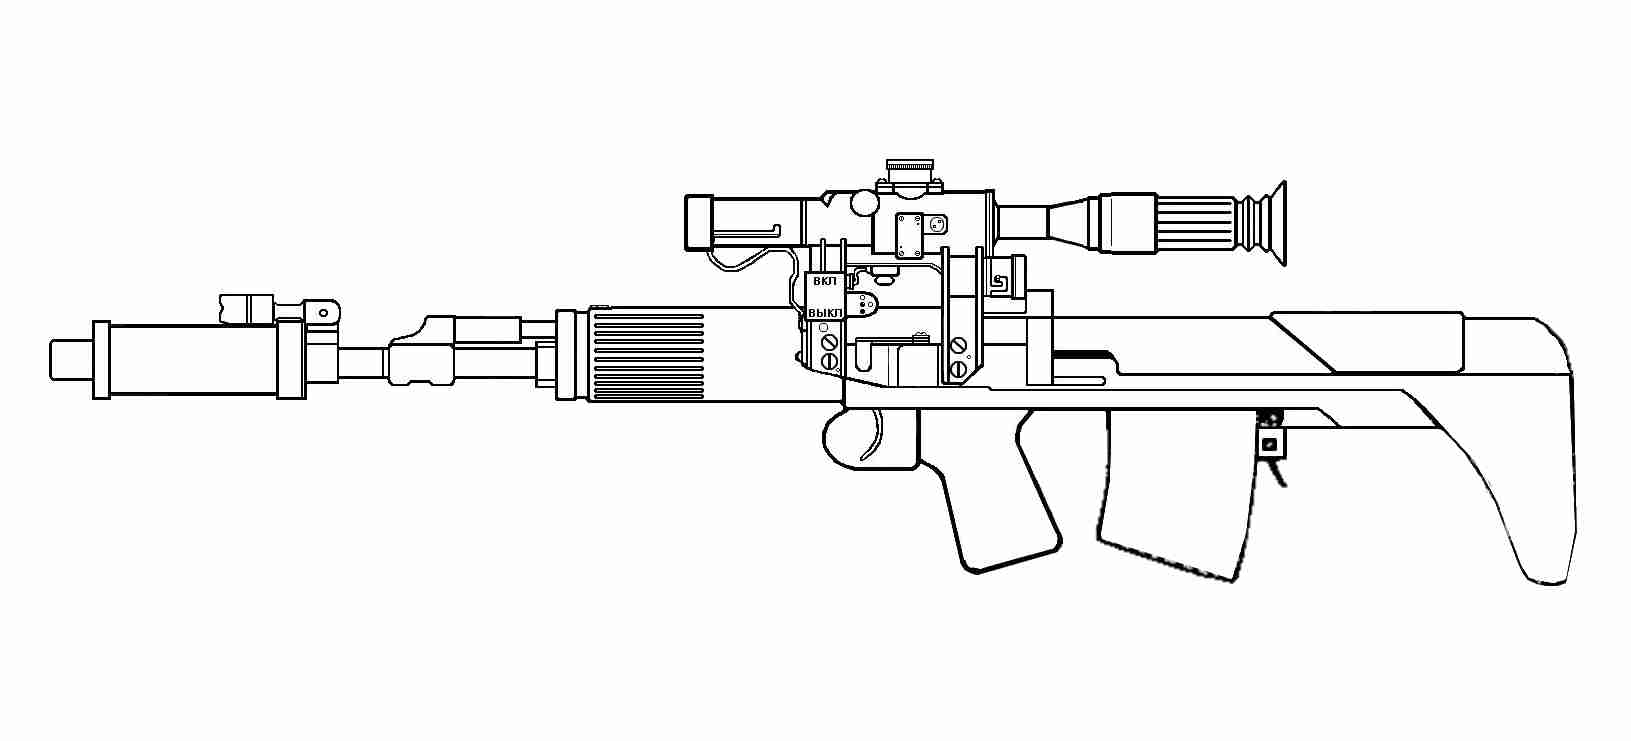 чертеж awp снайперской винтовки для дерева фото 48